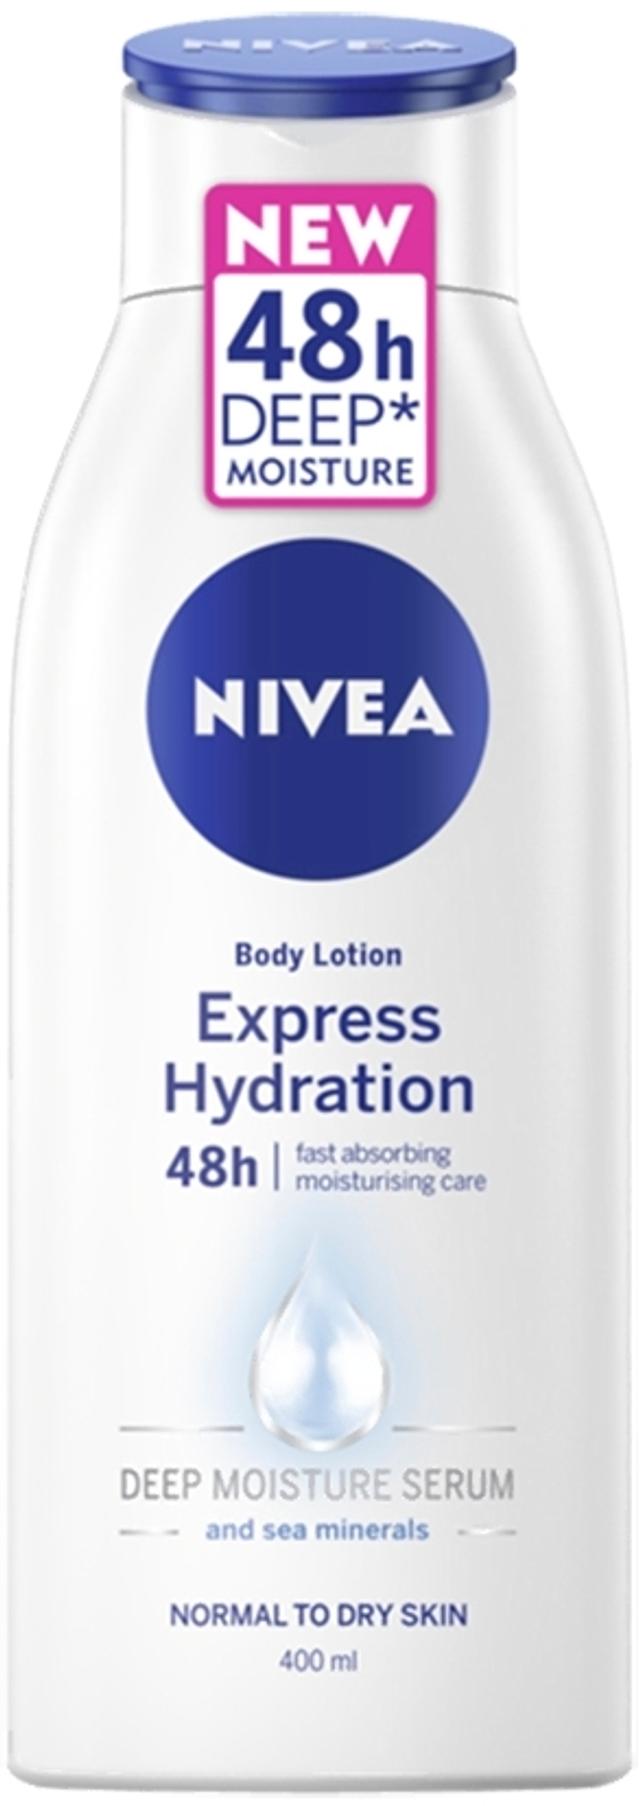 NIVEA 400ml Express Hydration Body Lotion vartaloemulsio normaalille ja kuivalle iholle